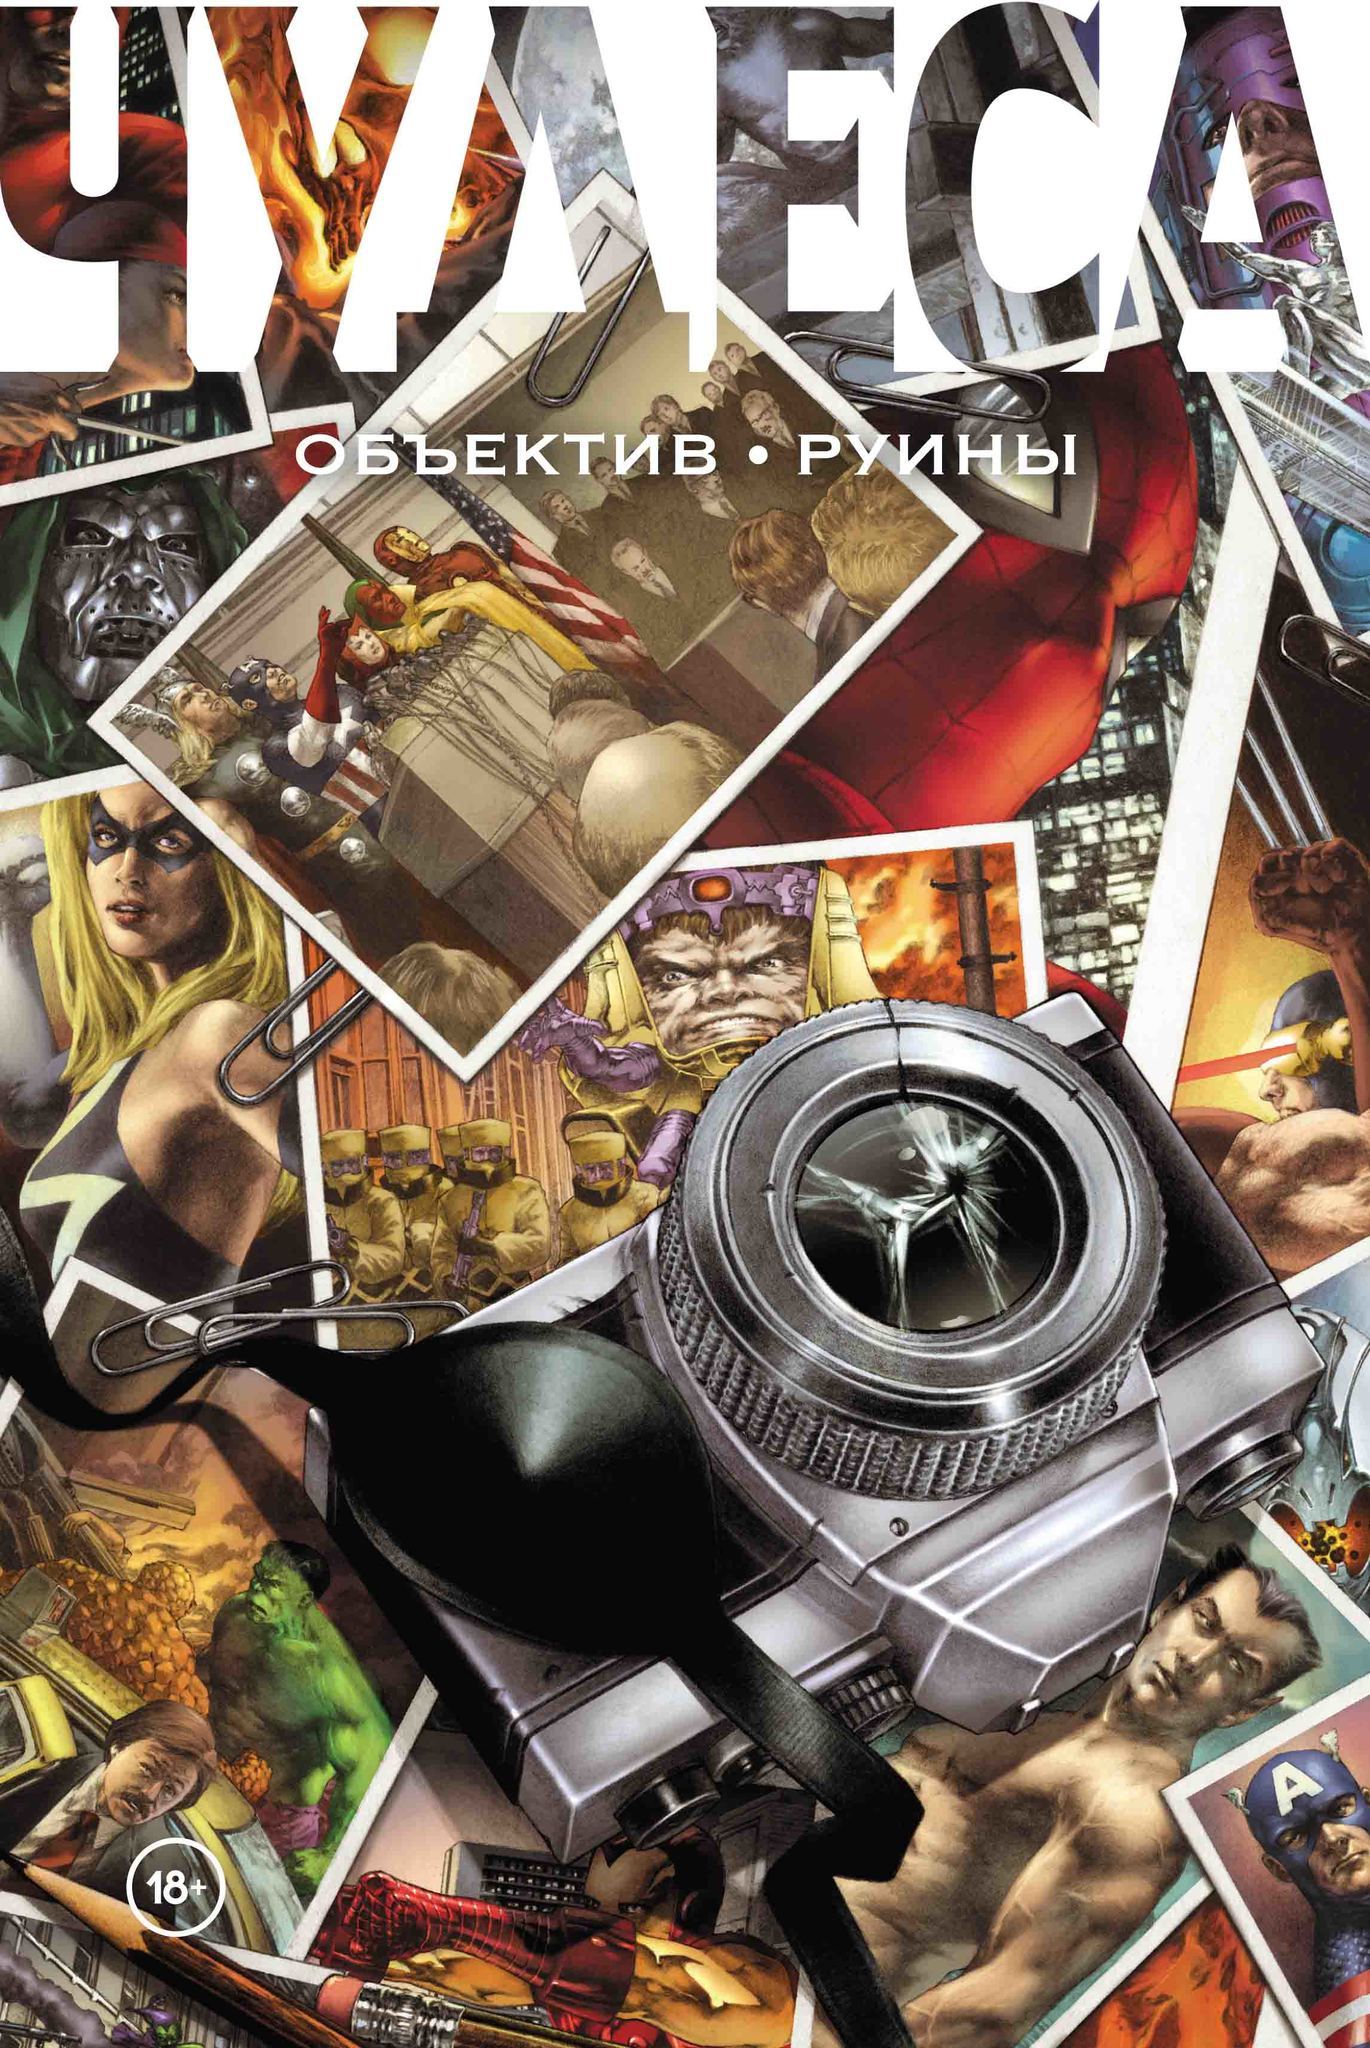 Комикс на русском языке «Чудеса. Объектив. Руины»